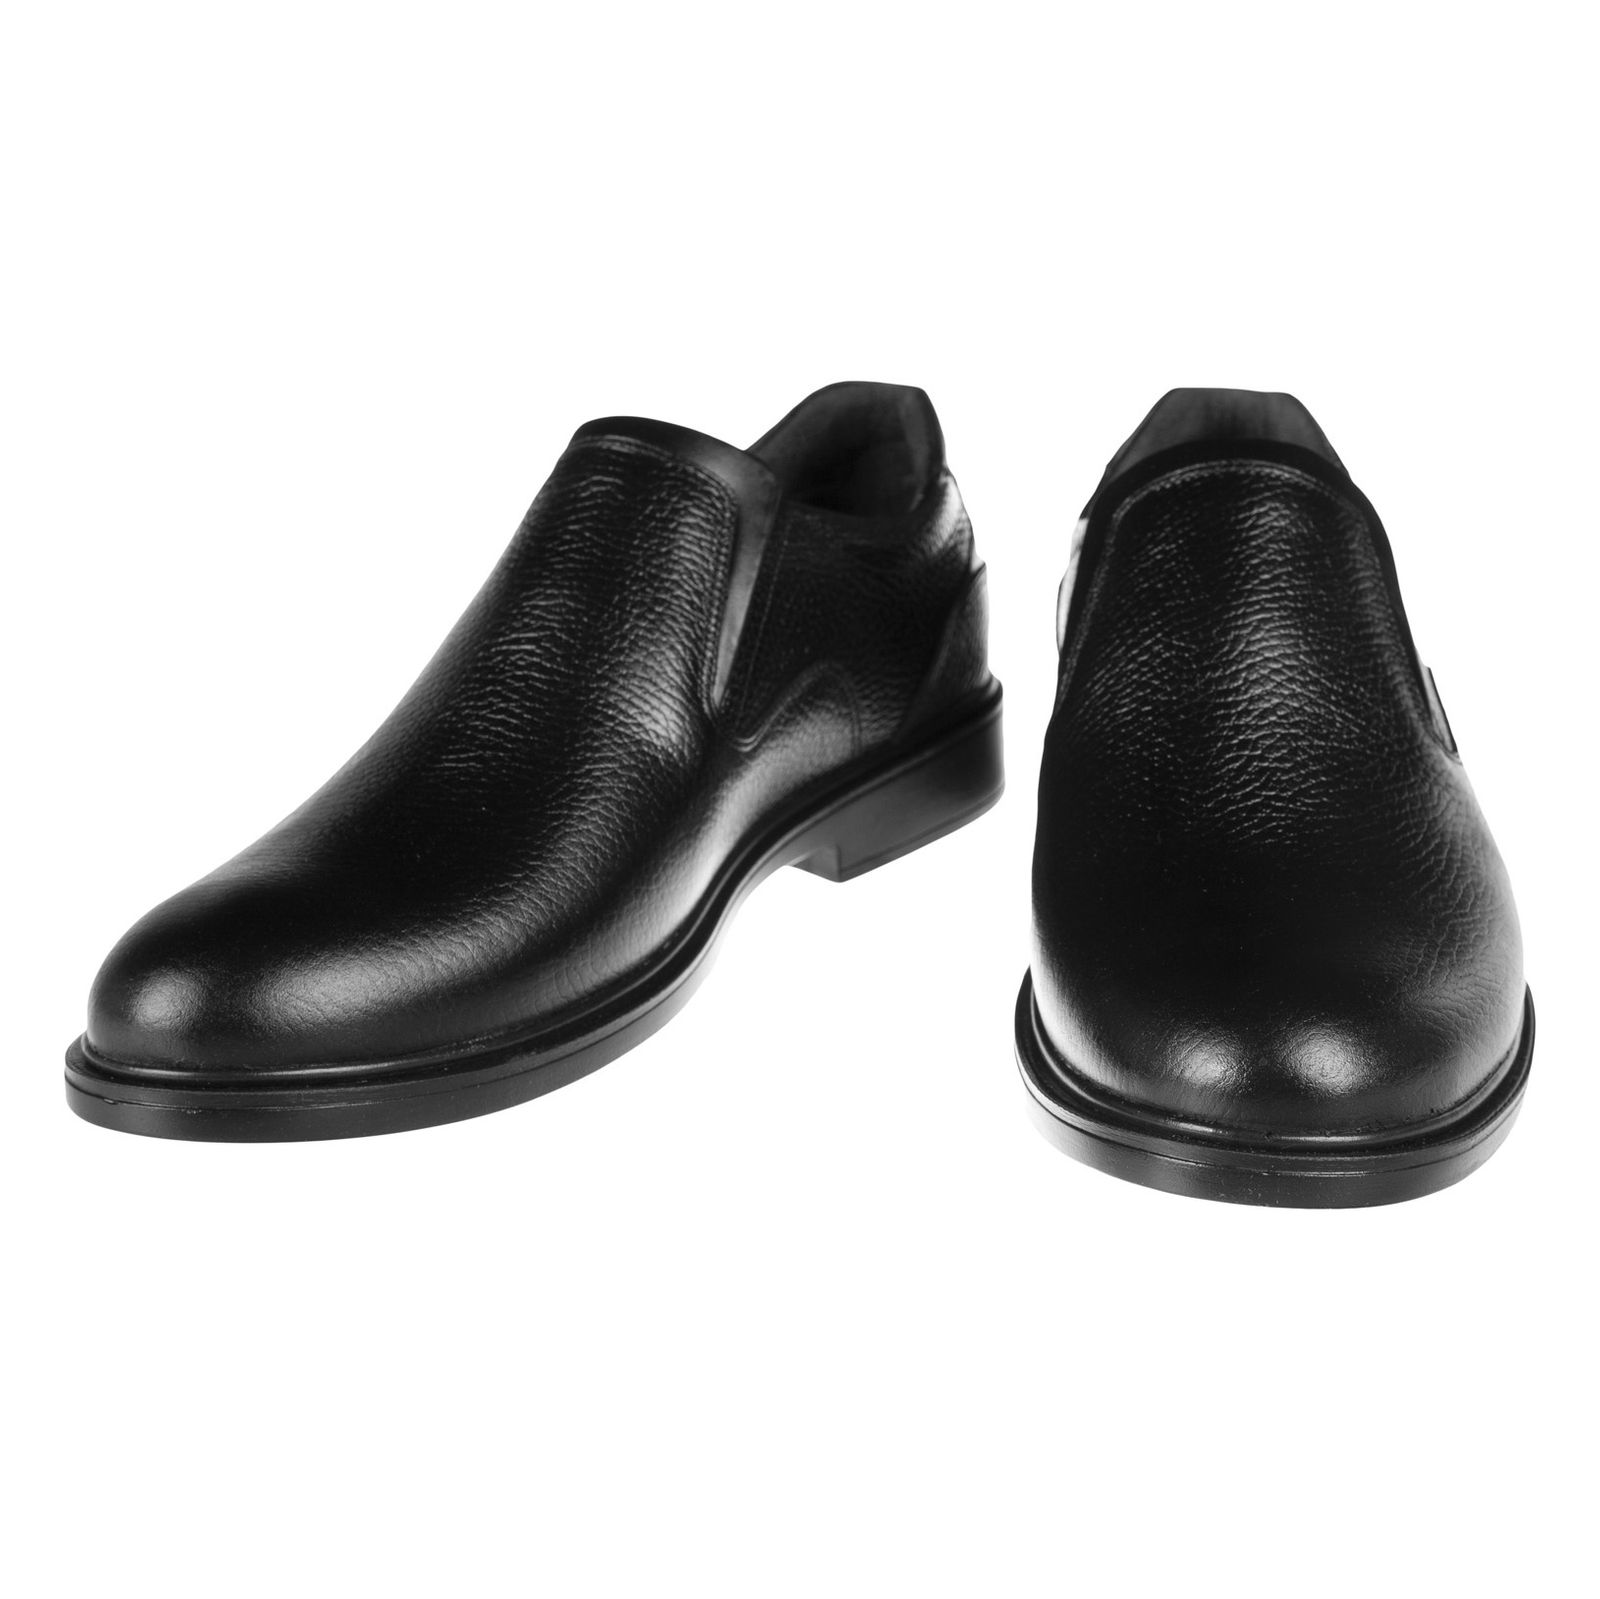 کفش مردانه دلفارد مدل 7048A503-101 - مشکی - 3